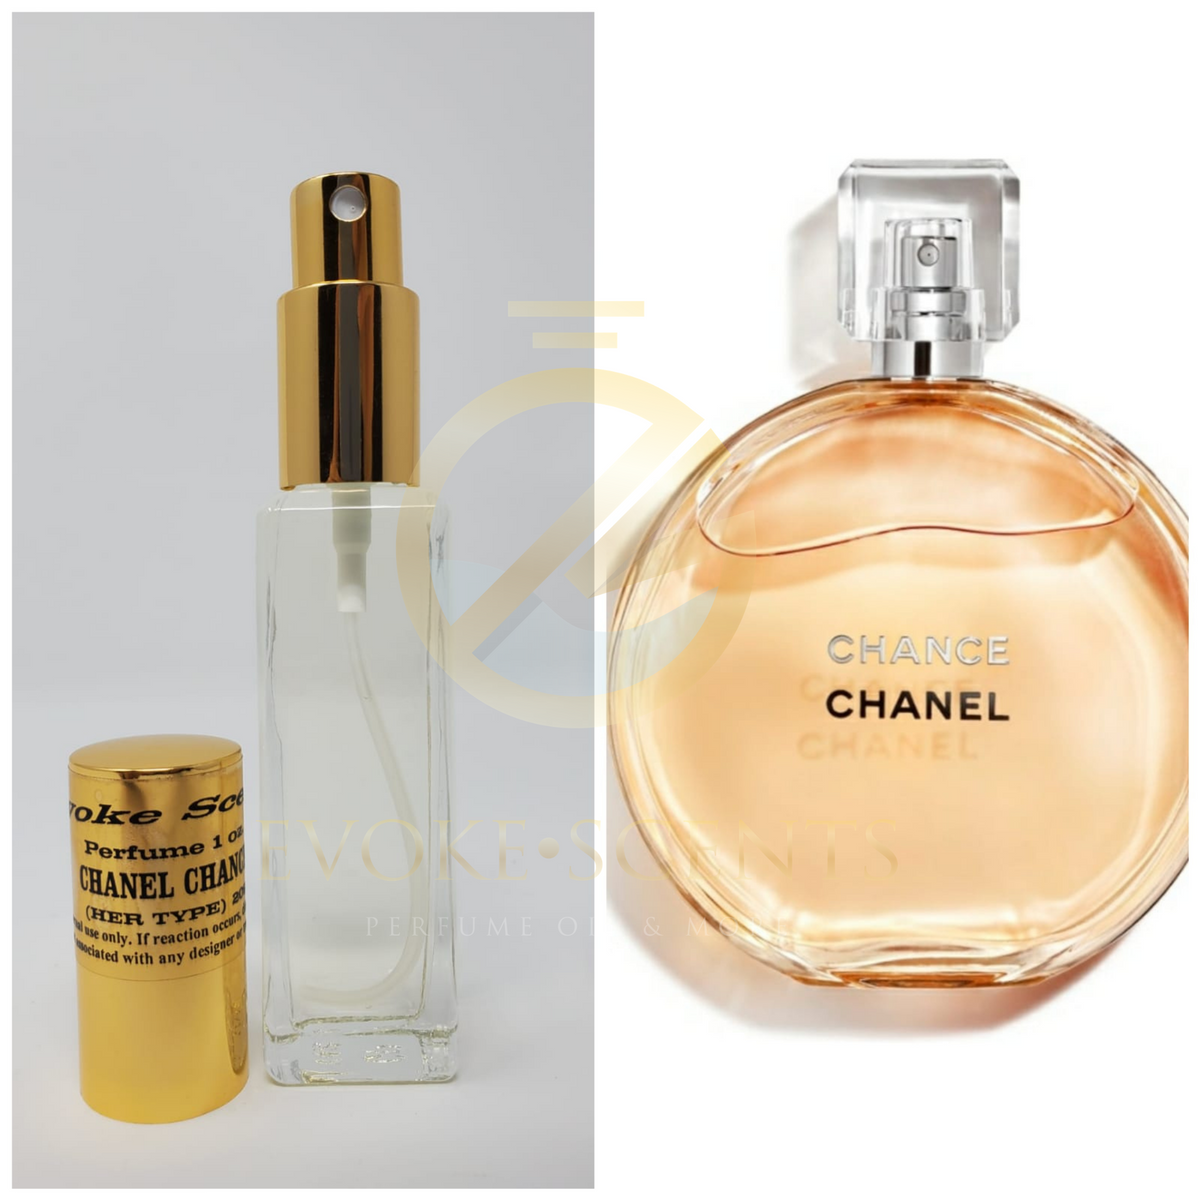 Mobetter Fragrance Oils' Perfume Body Oil Fragrance Size